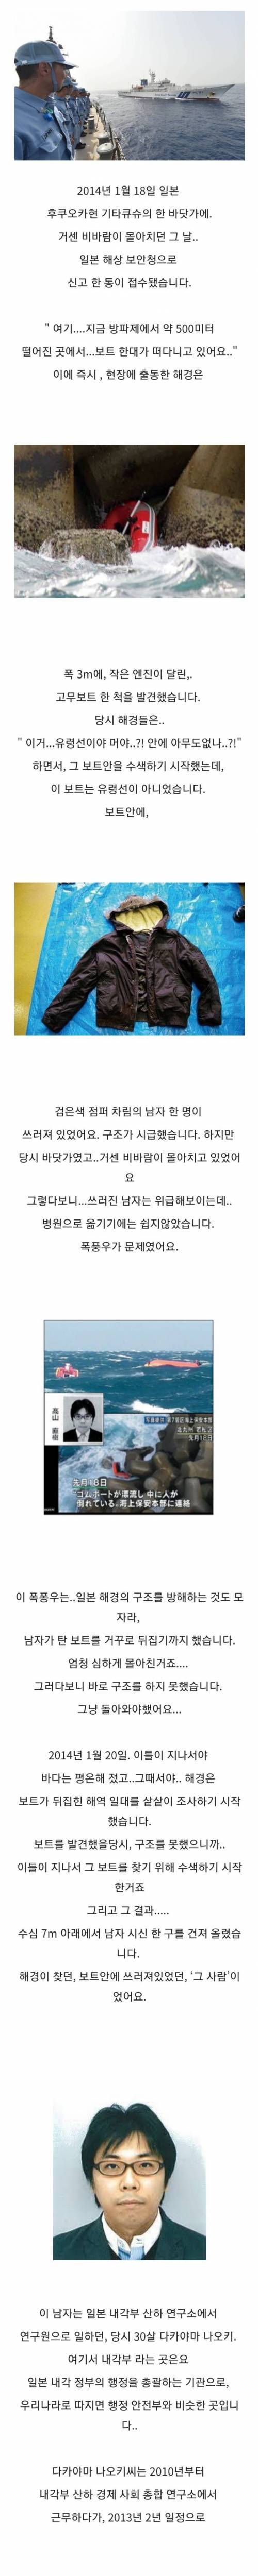 [스압] 한국에서 밀항하다 사망한 일본 공무원.jpg